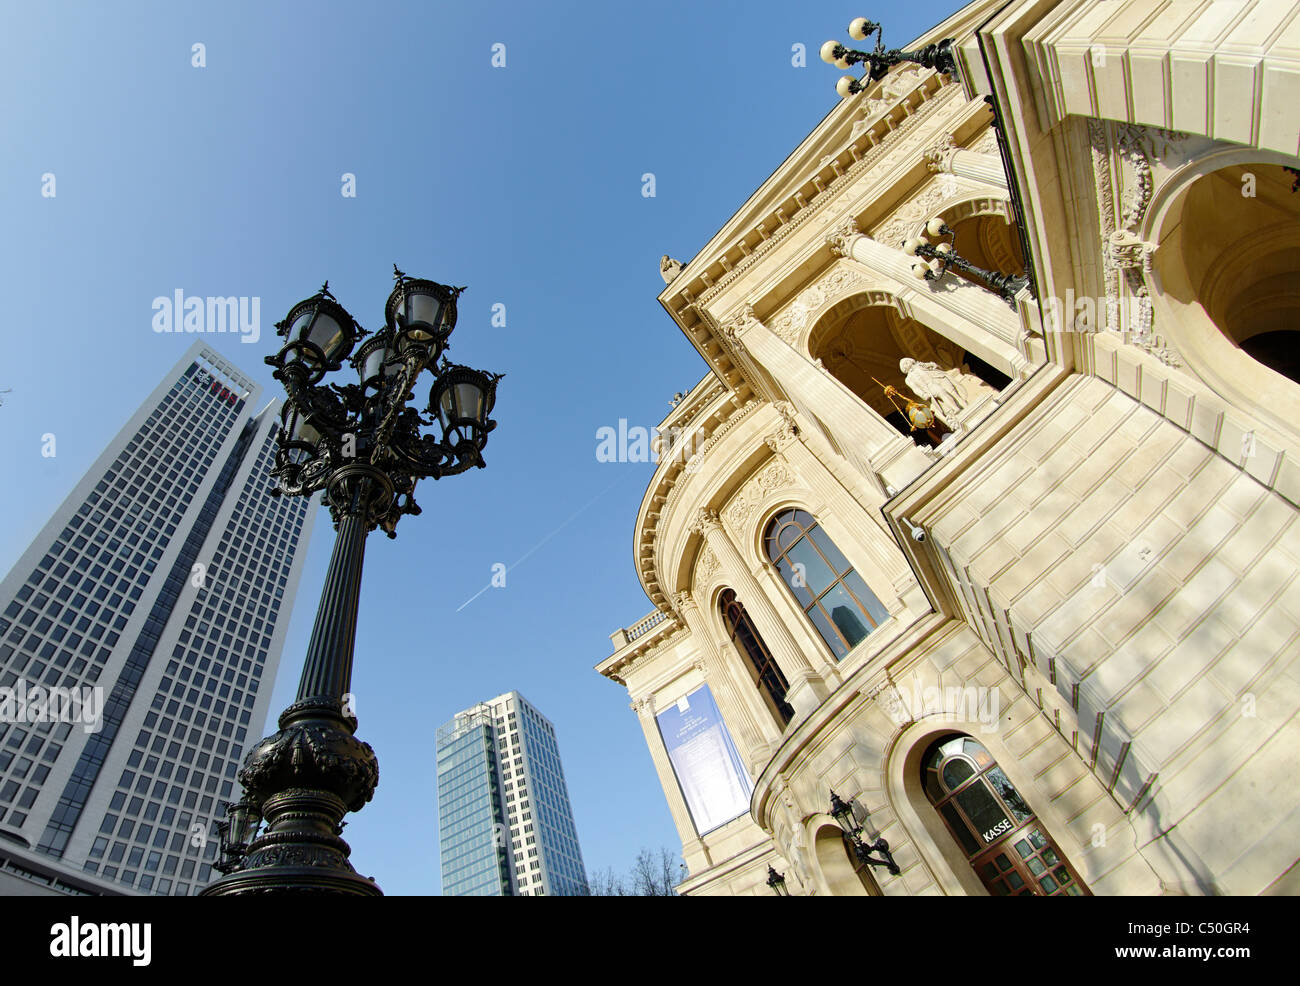 Alte Oper de Francfort, frog perspective, Frankfurt am Main, Hesse, Germany, Europe Banque D'Images